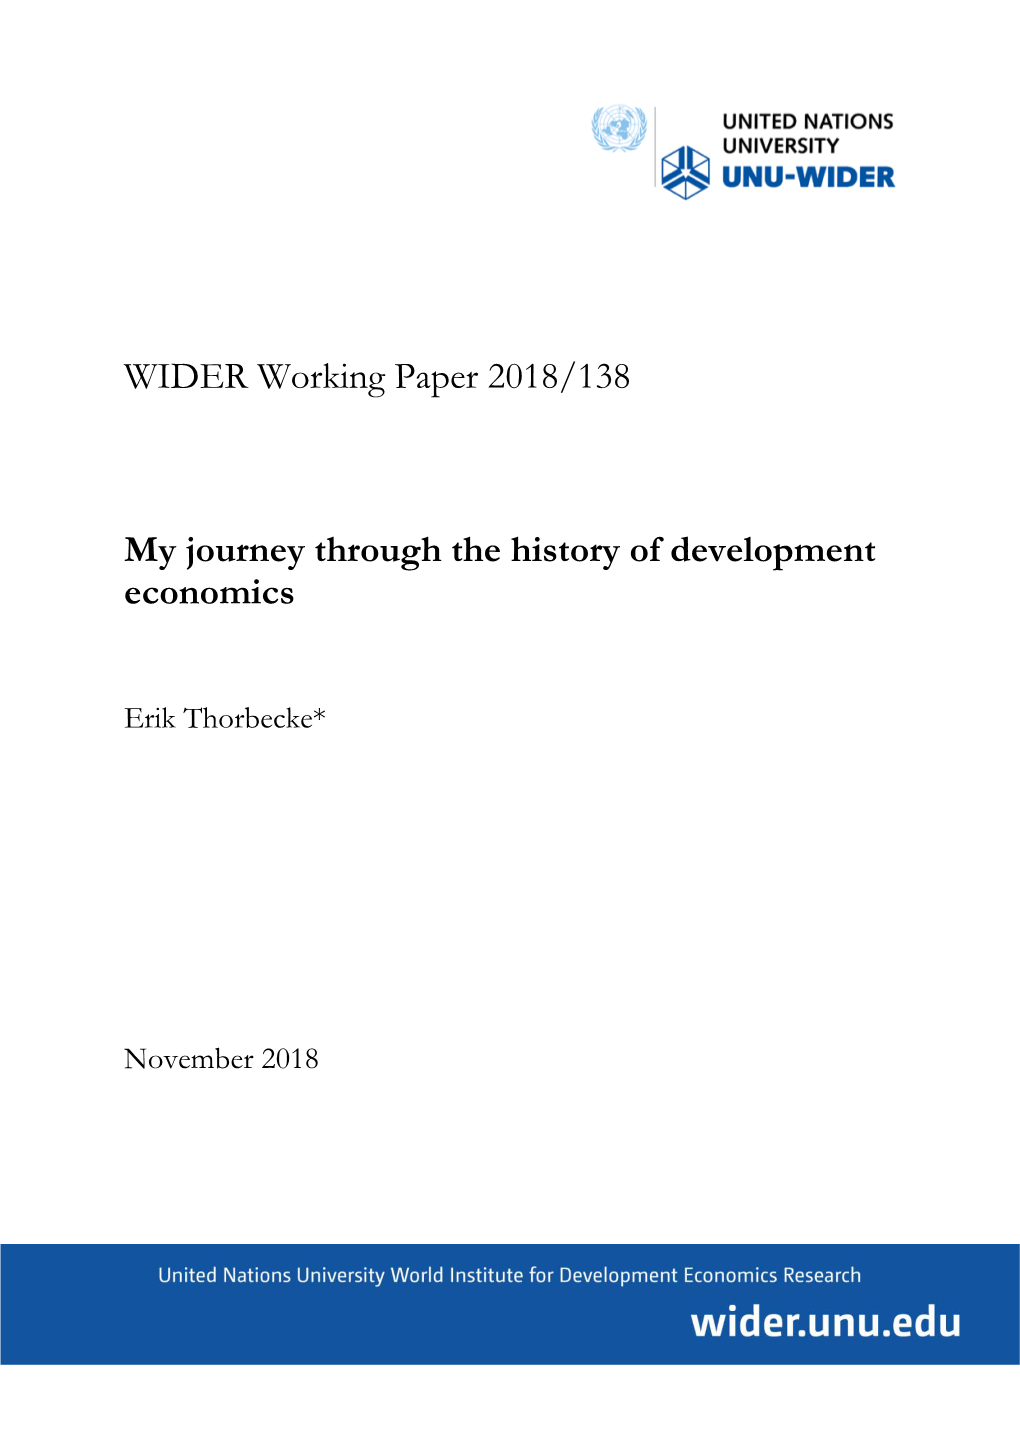 My Journey Through the History of Development Economics